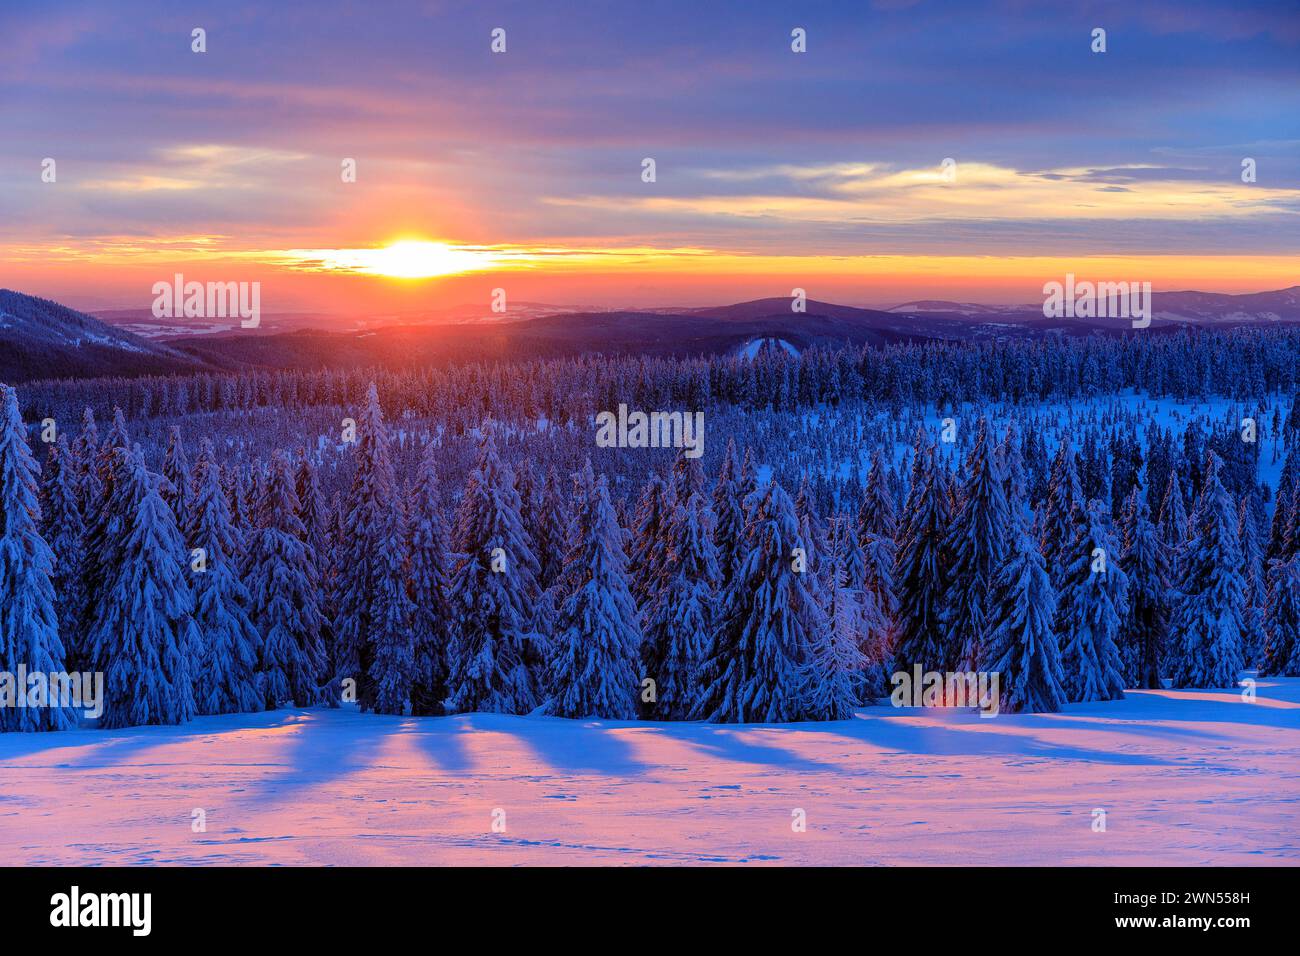 Sonnenuntergang und Winterlandschaft an der Wossecker Baude oberhalb von Harrachsdorf im Riesengebirge, Tschechien *** Sunset and winter landscape at Stock Photo